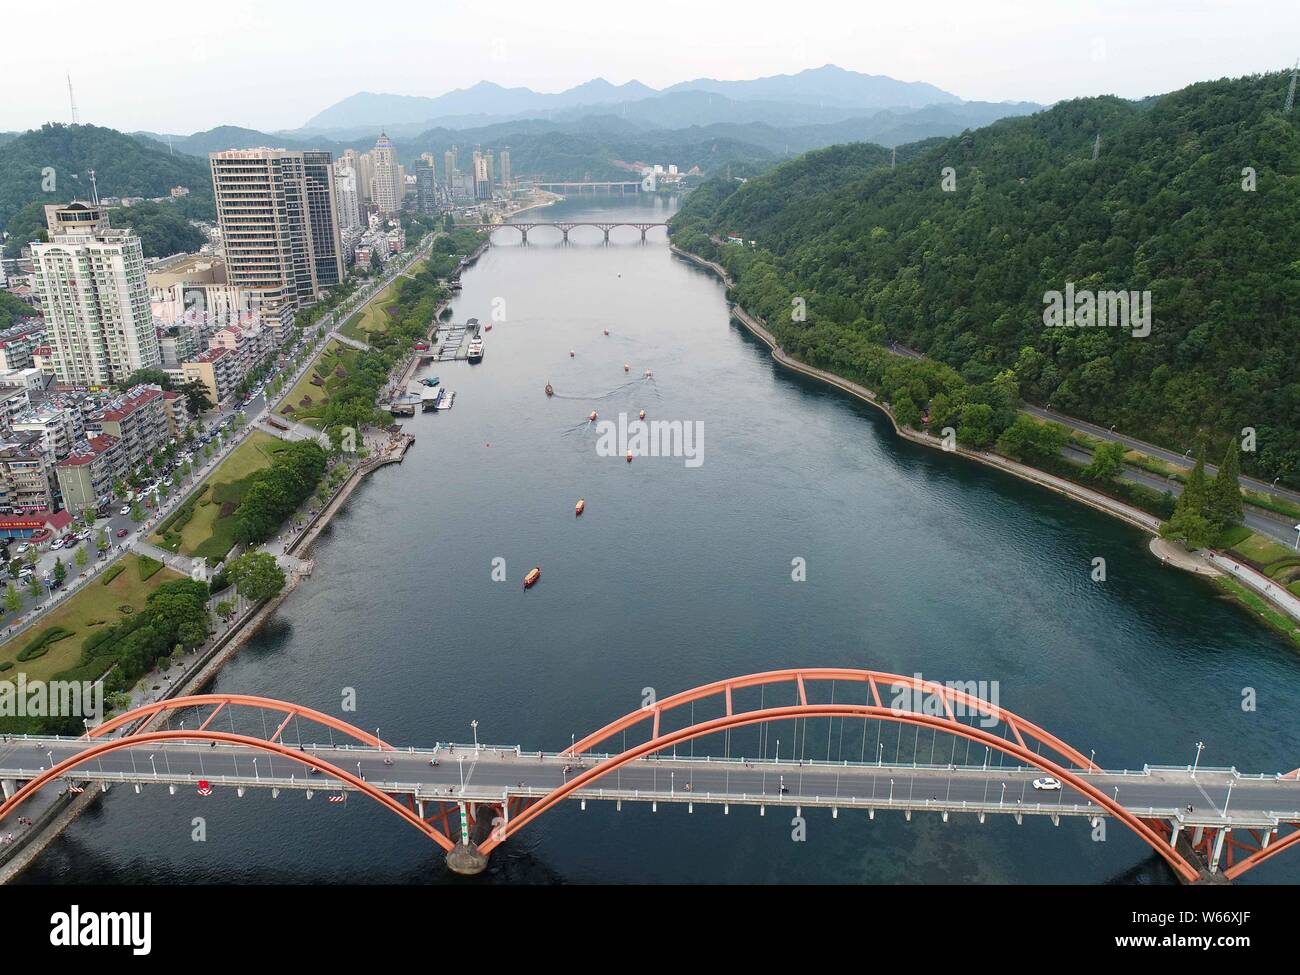 Bateaux de touristes sillonnent les Xinanjiang River, où la température de l'eau reste à environ 17 degrés Celsius, à un endroit pittoresque dans la ville de Hangzhou, Hangzhou ci Banque D'Images